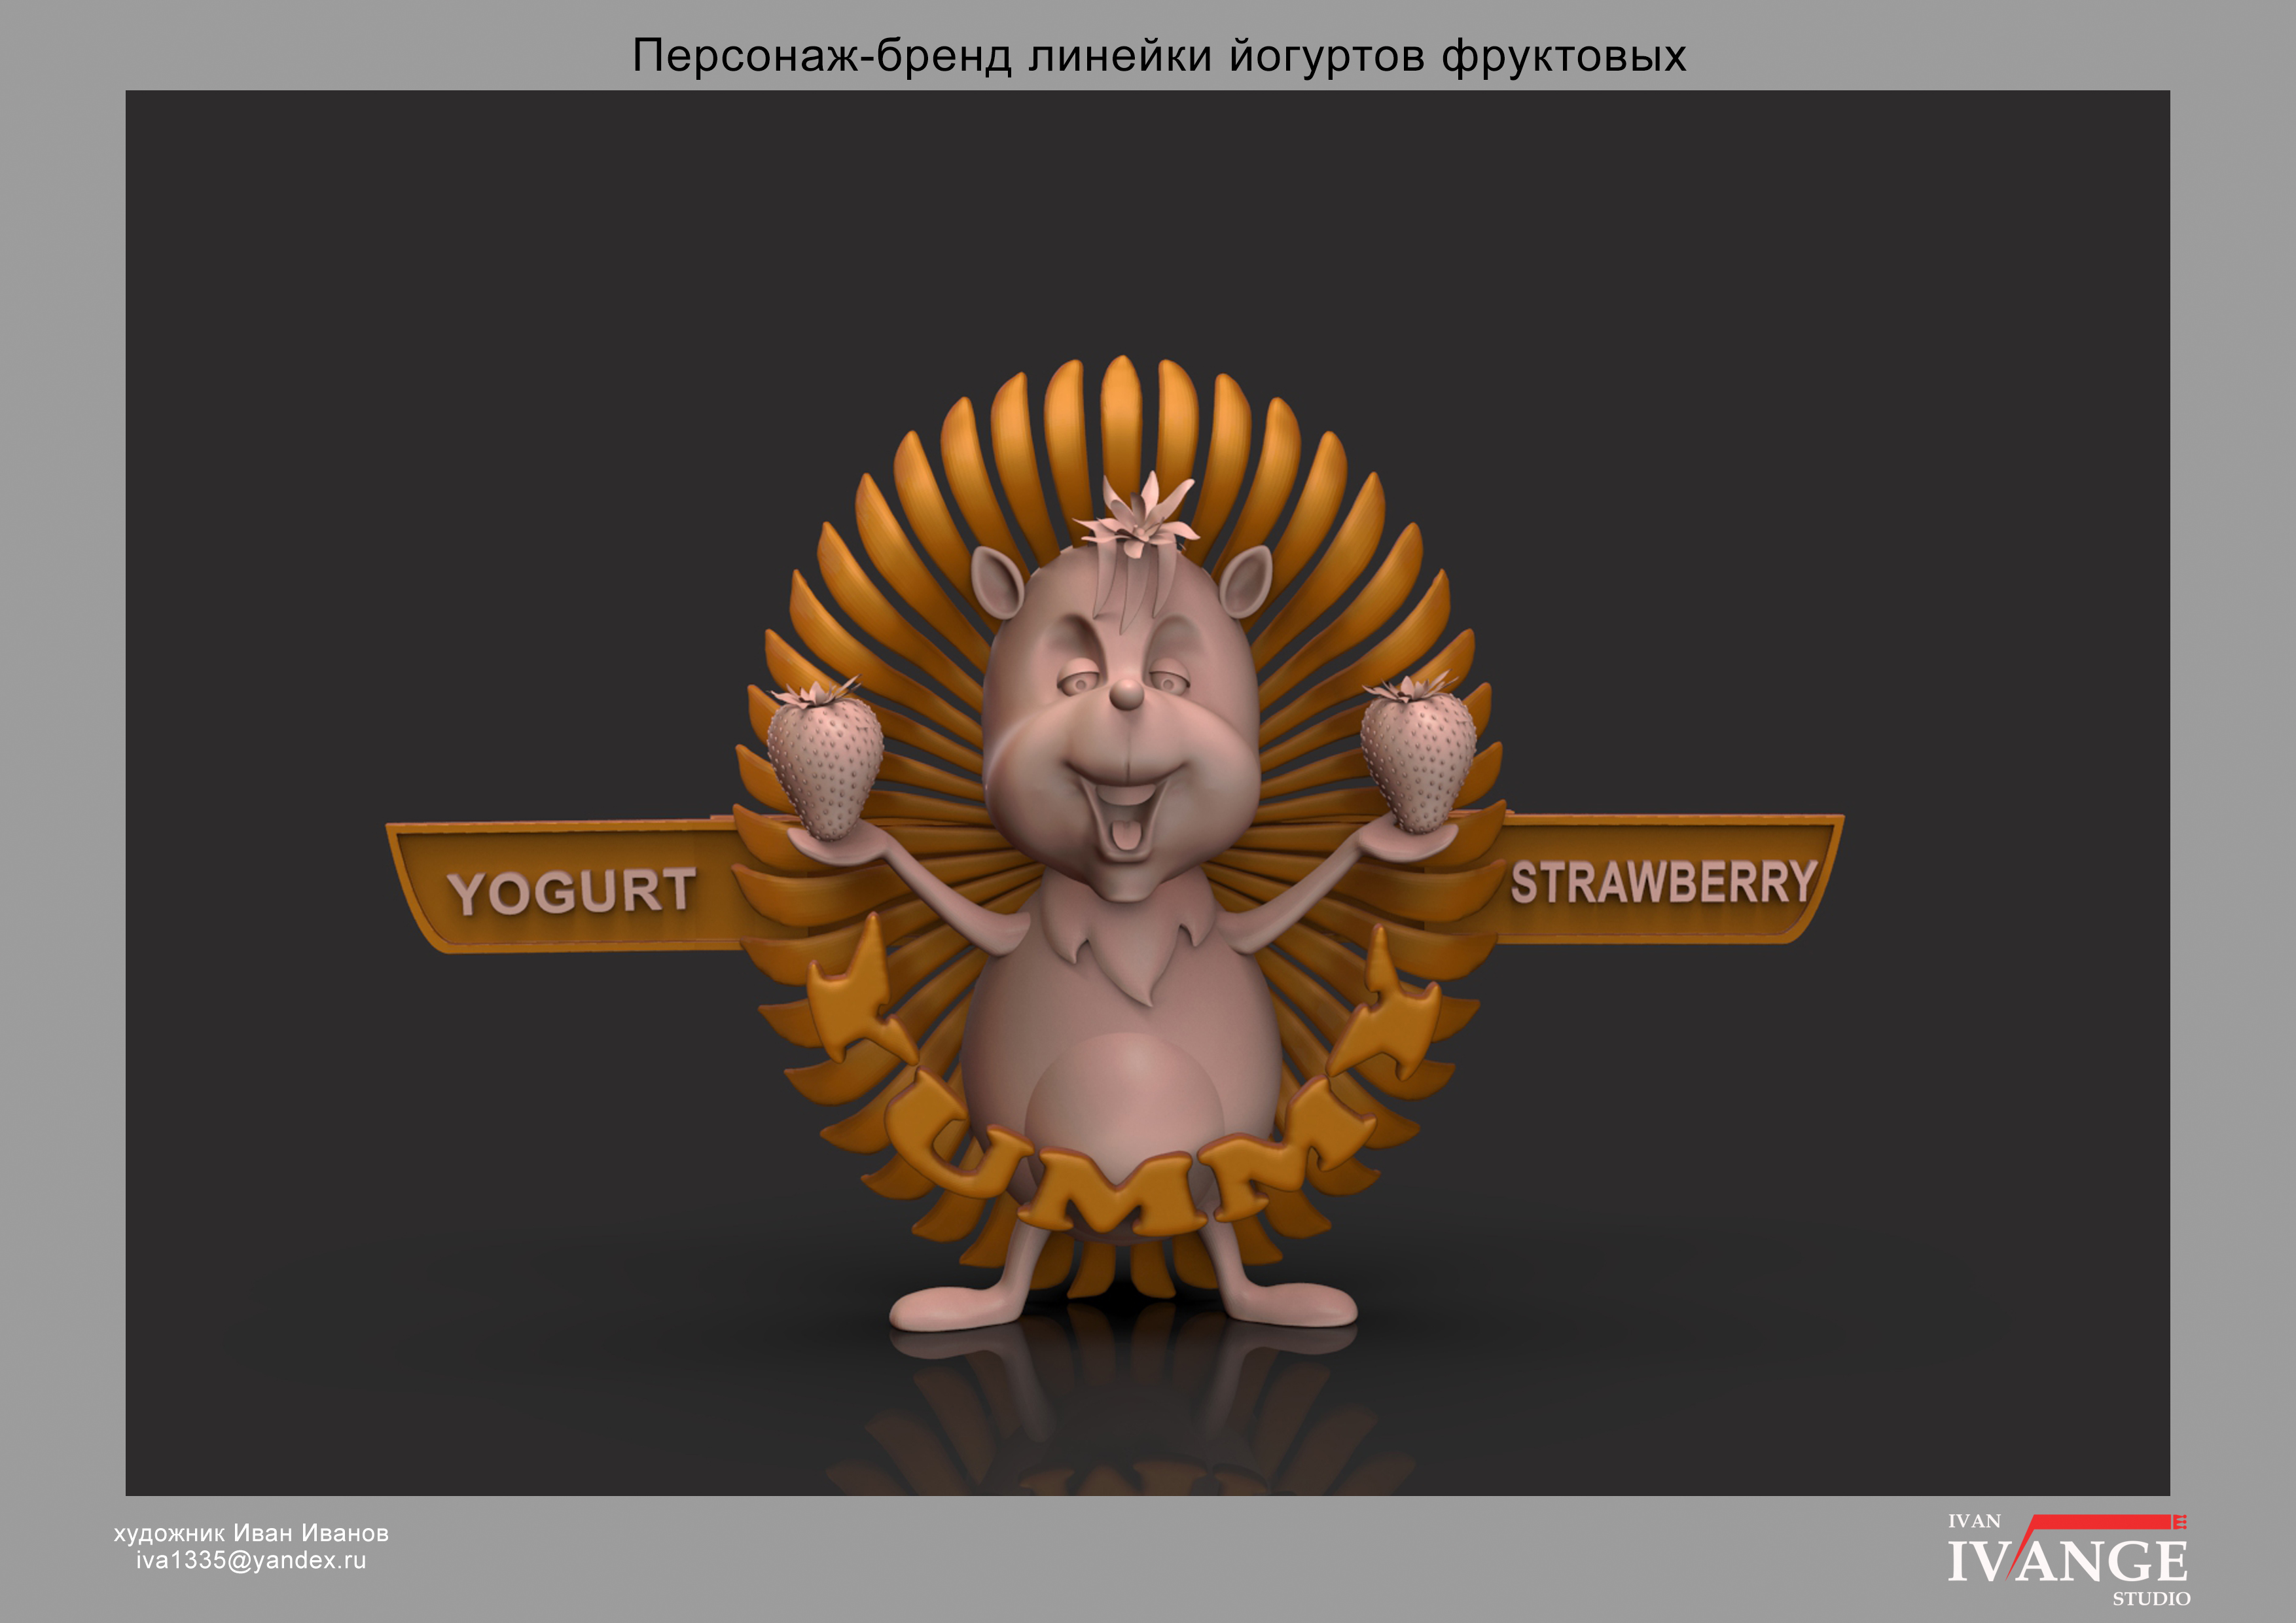 Персонаж_бренд линейки йогуртов